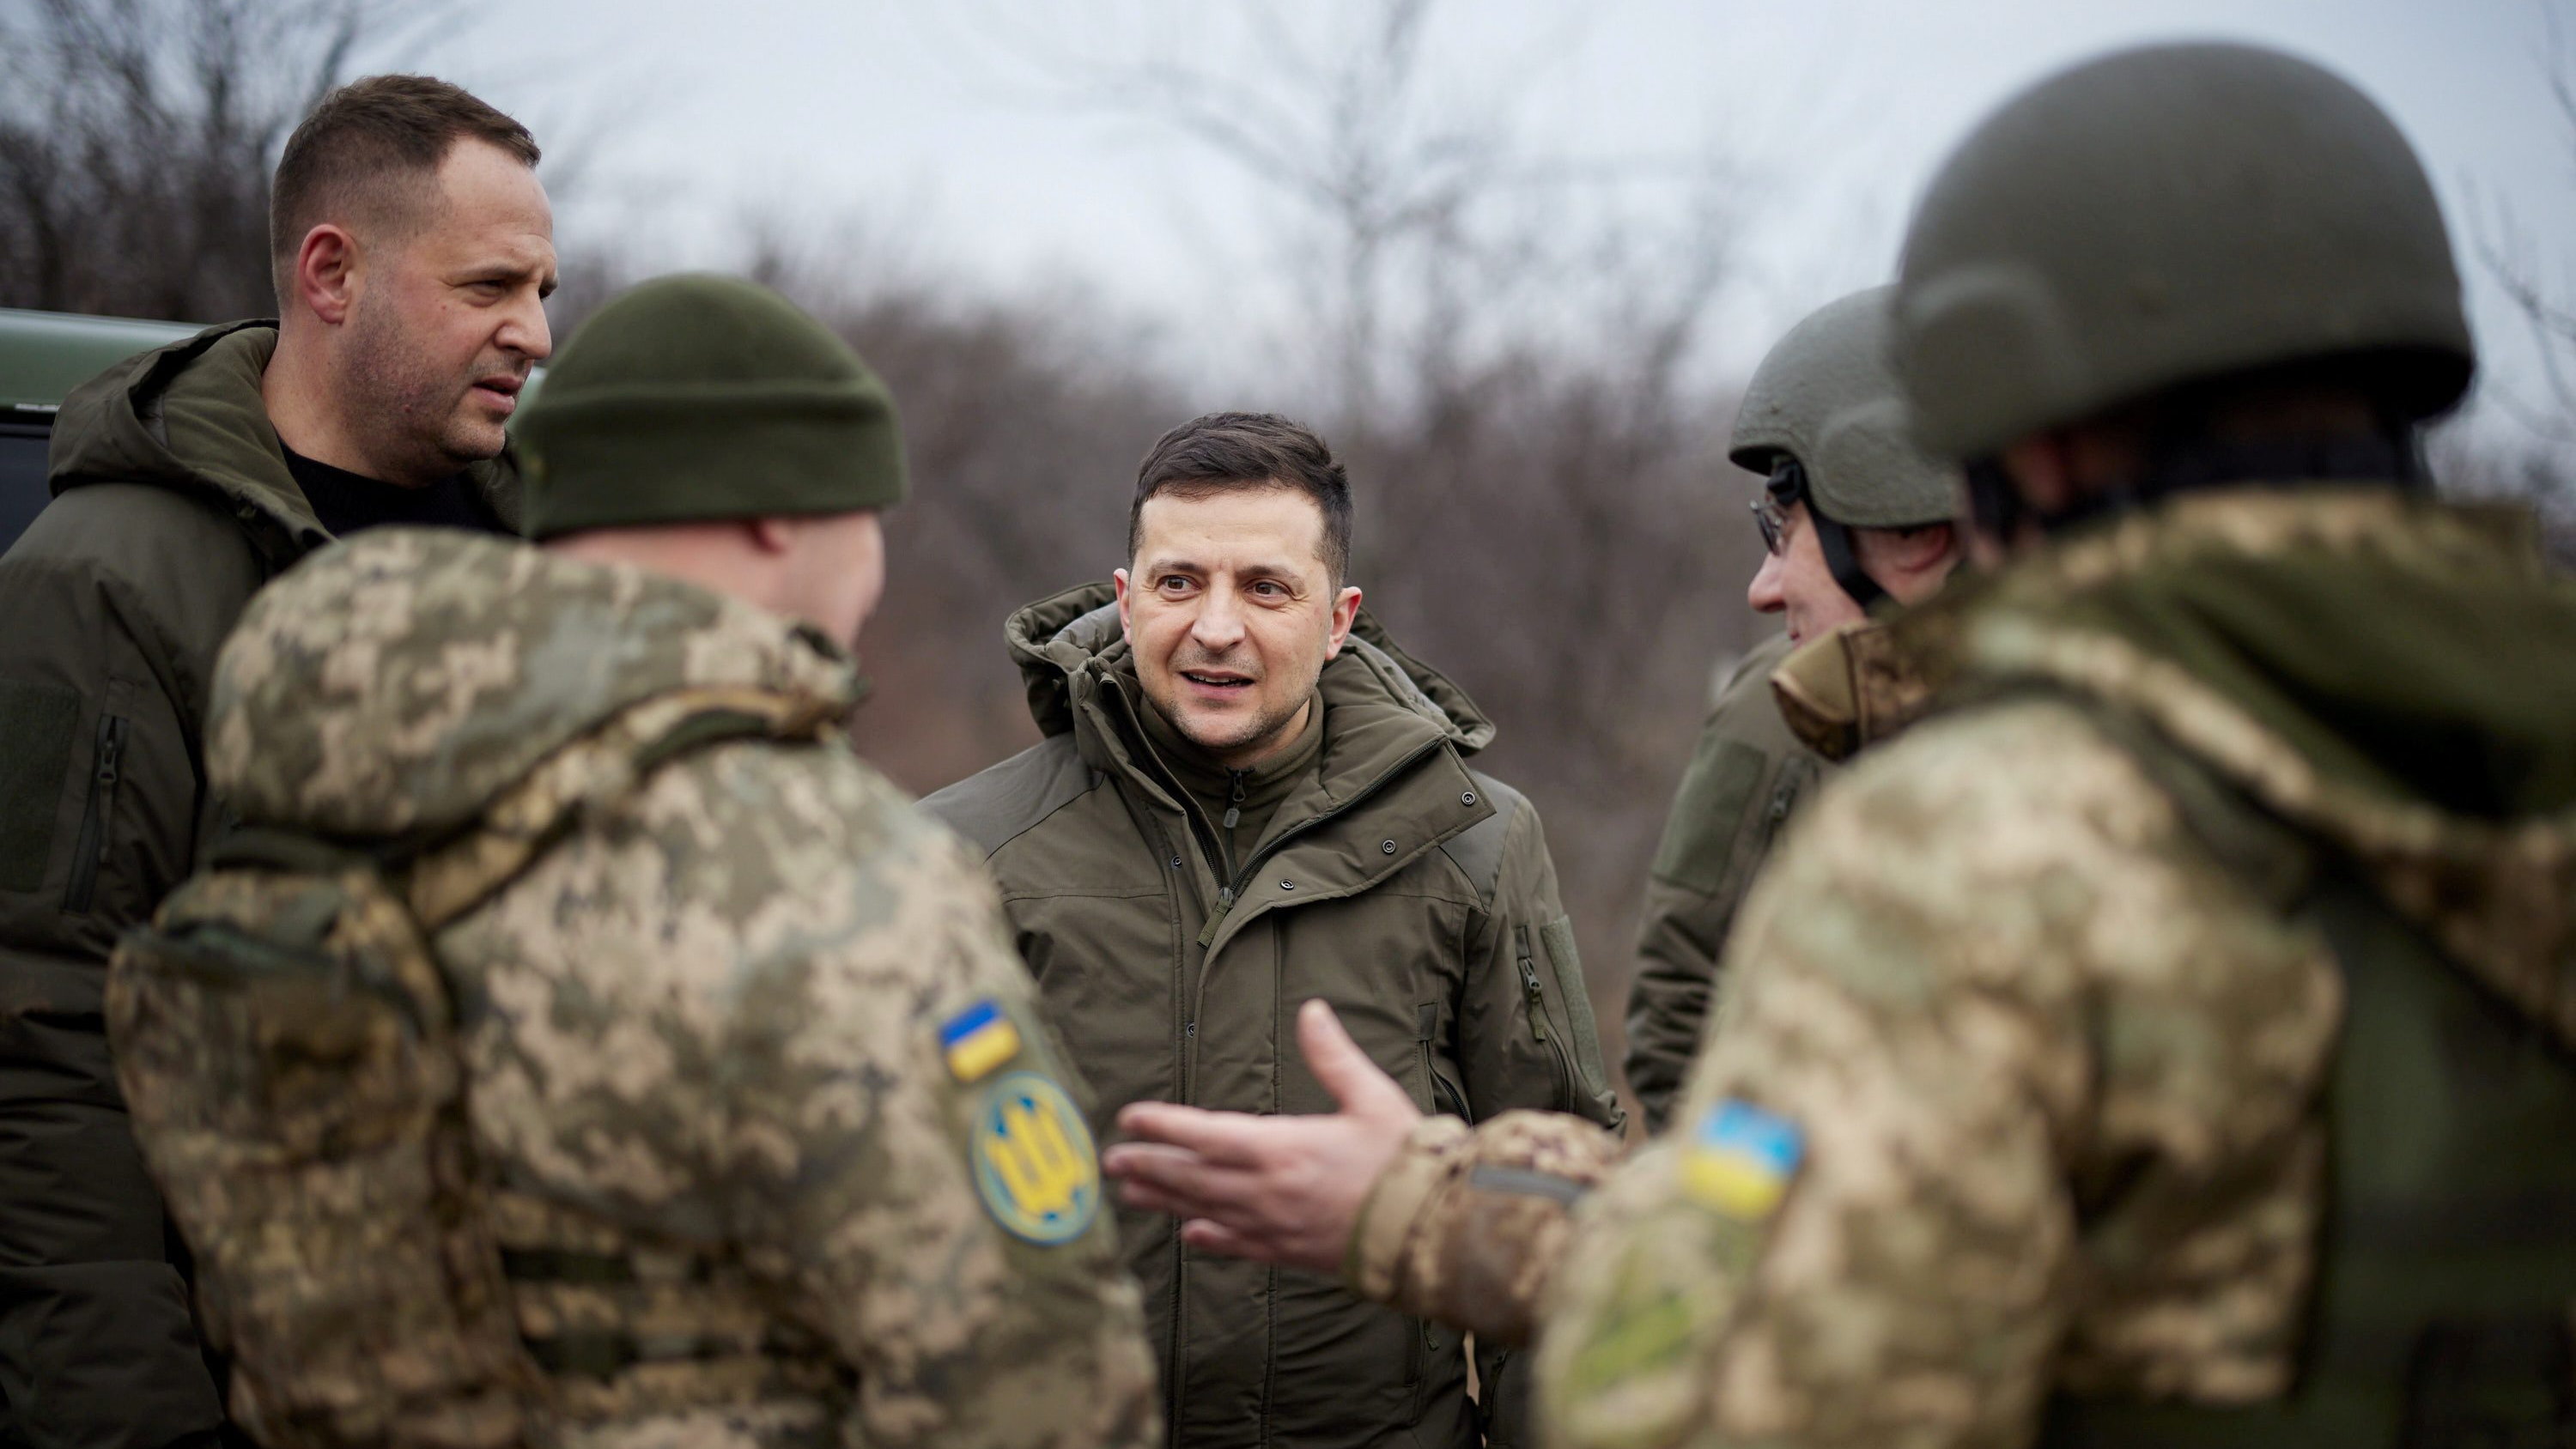 ukraińcy z polski zostaną wezwani do wojska? podpisano nową ustawę